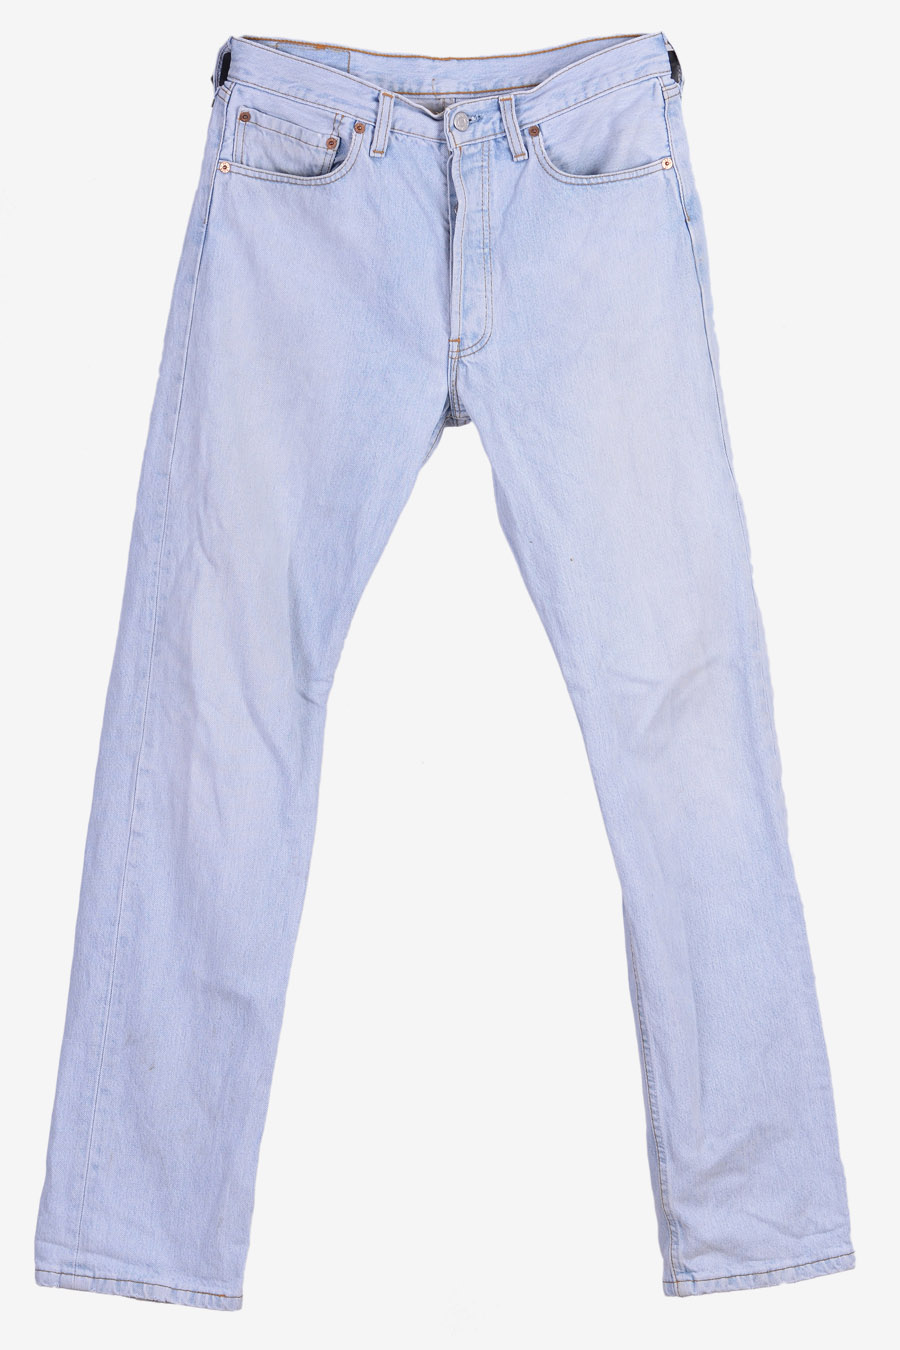 Vintage Levi's 501 Jeans | Size 32/34 - Brick Vintage